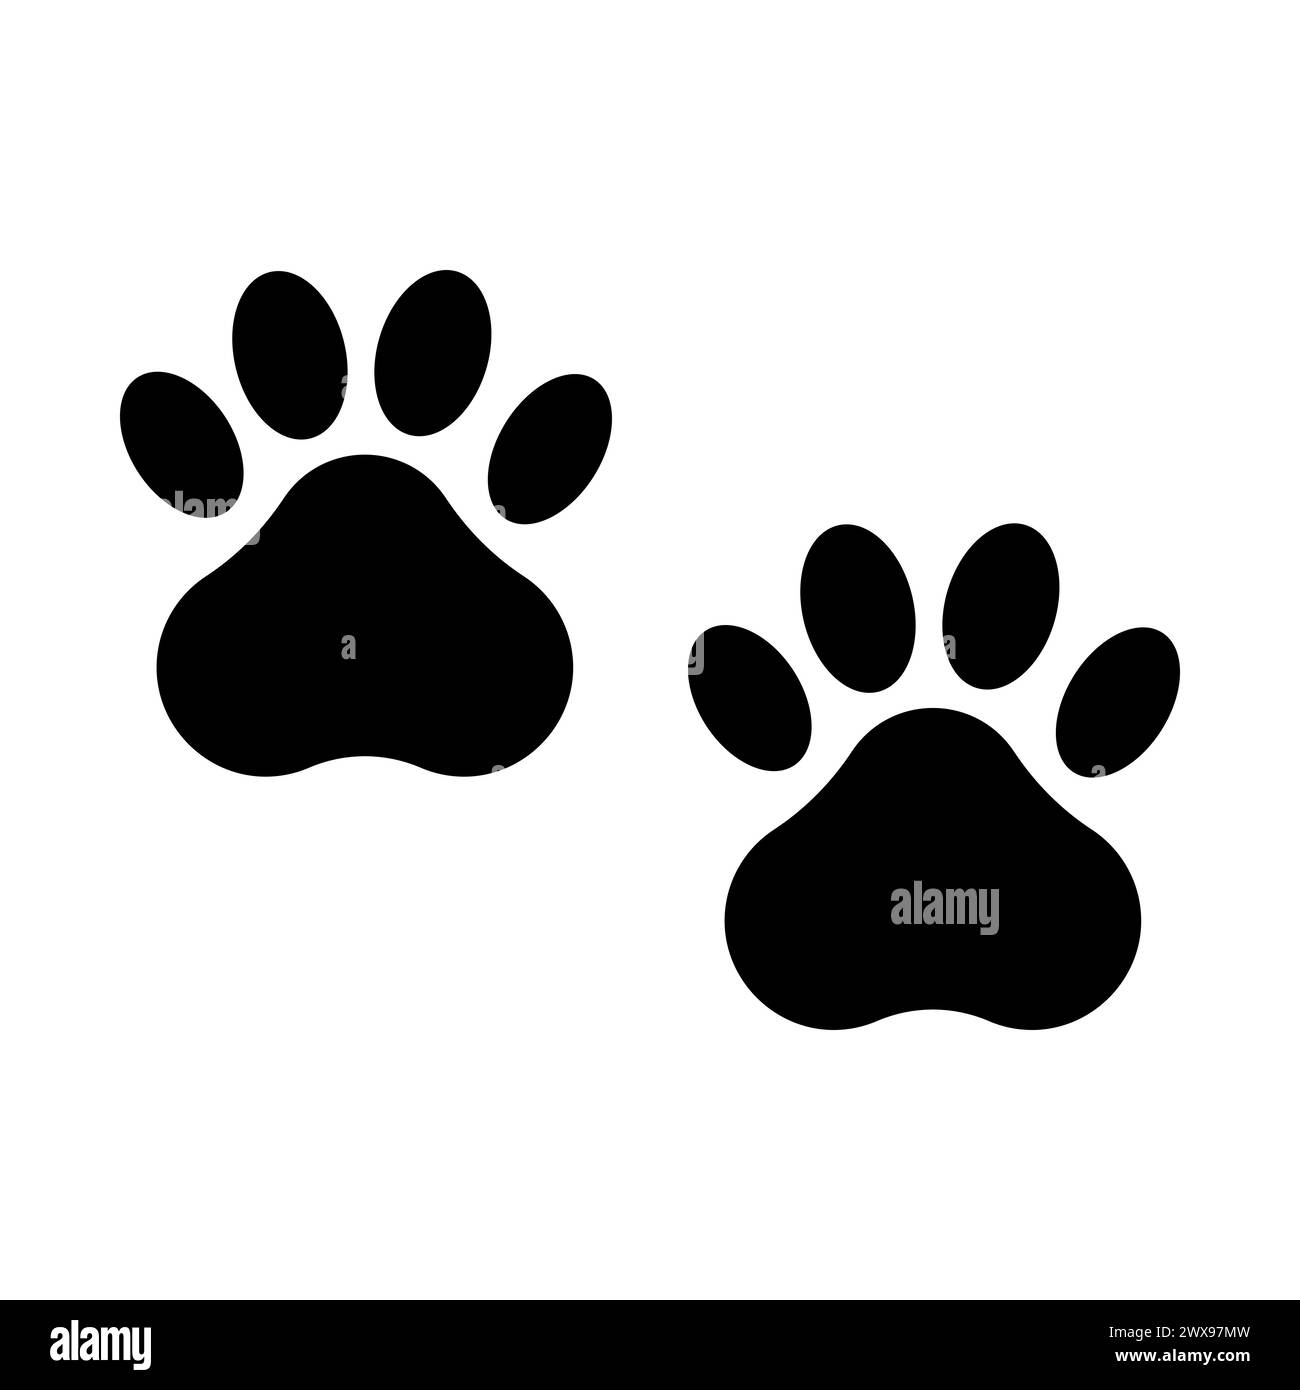 La zampa nera viene stampata. Icona impronte animali domestici. Simbolo delle tracce degli animali. Illustrazione vettoriale. EPS 10. Illustrazione Vettoriale